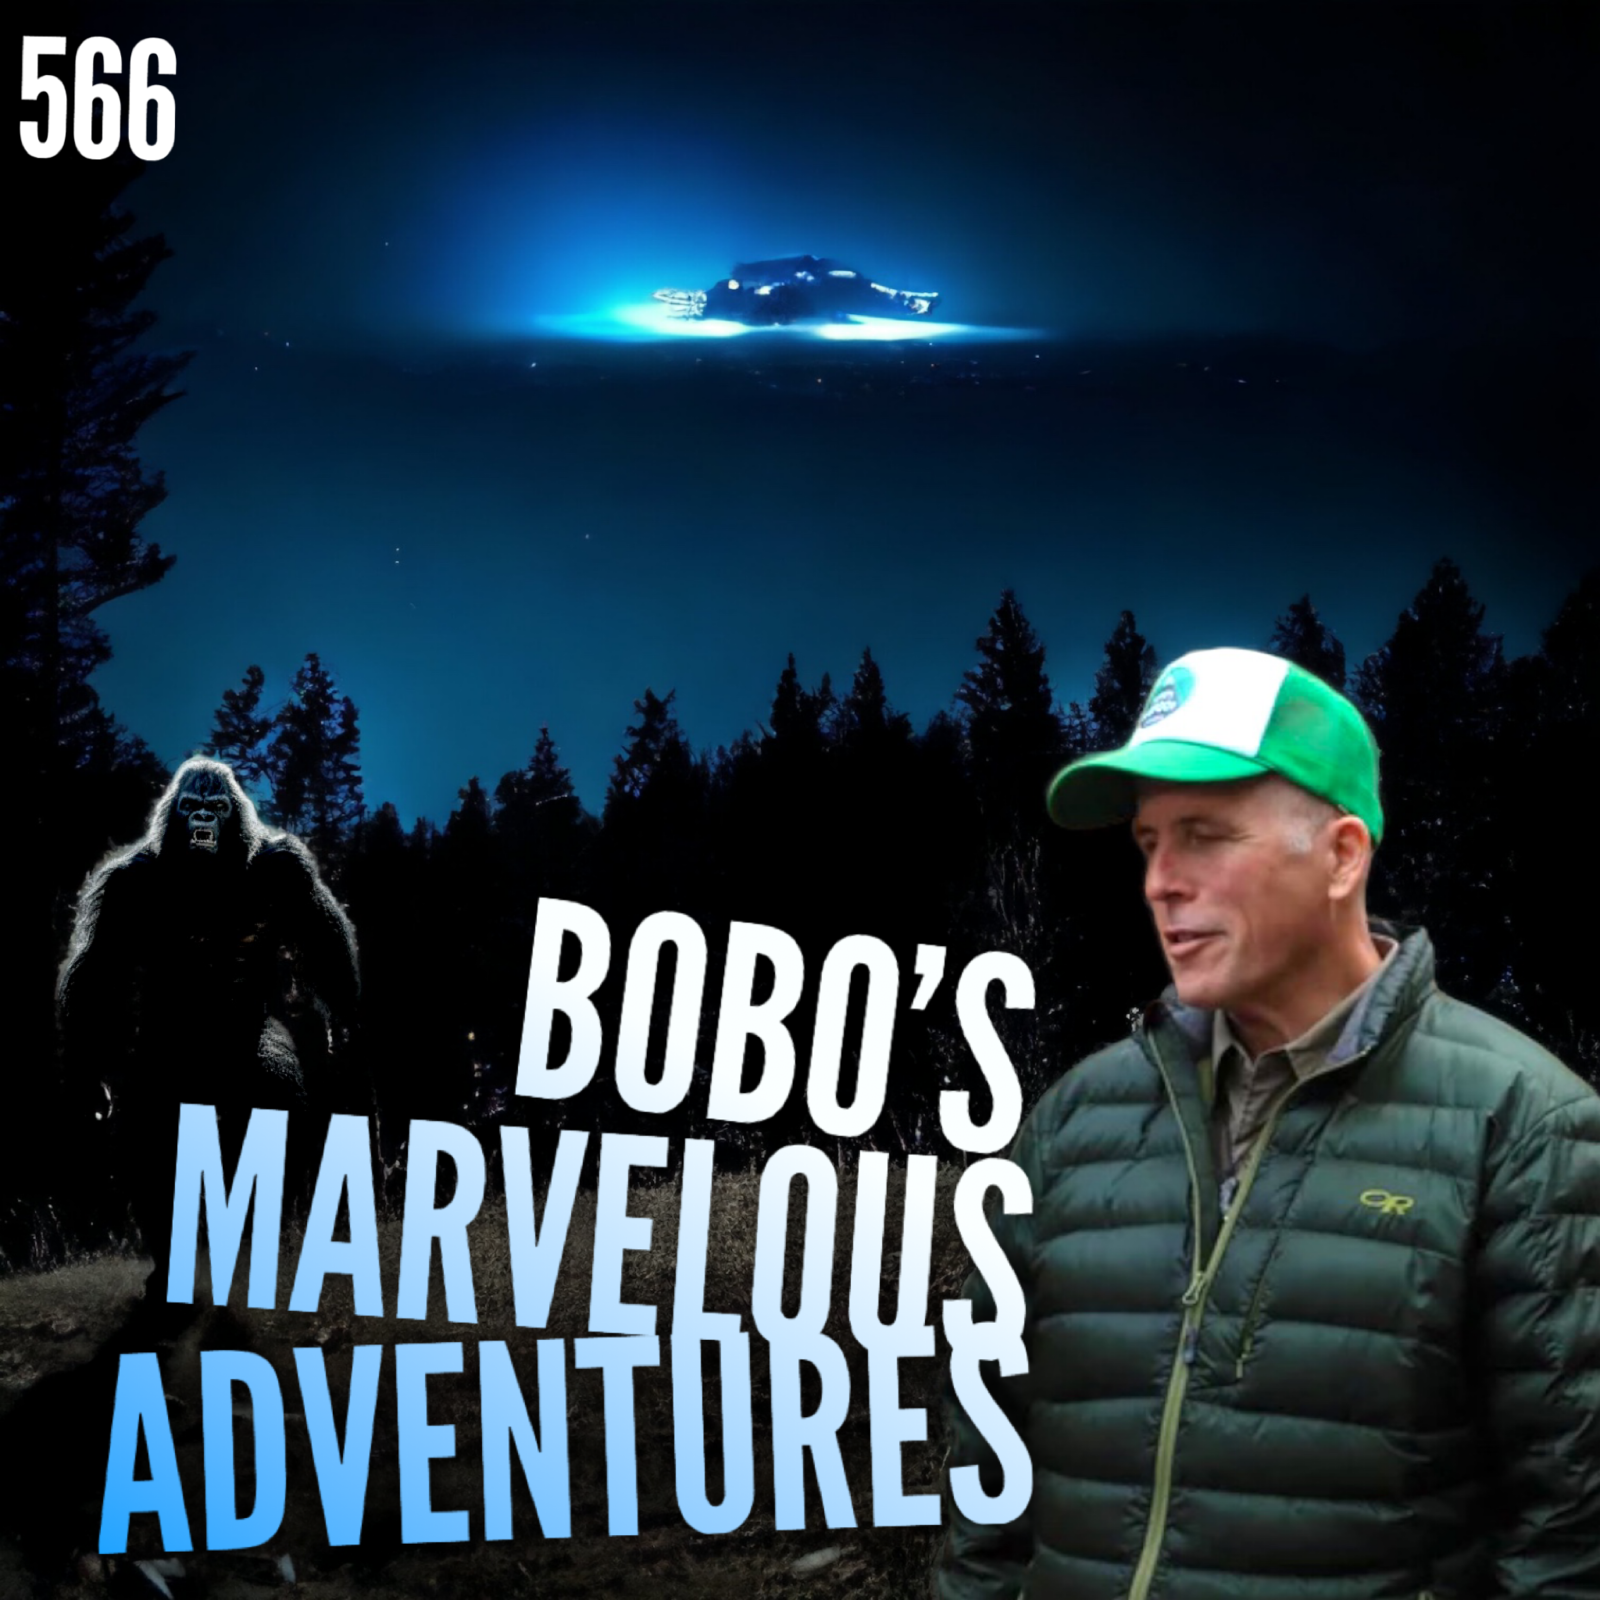 566: Bobo’s Marvelous Adventures